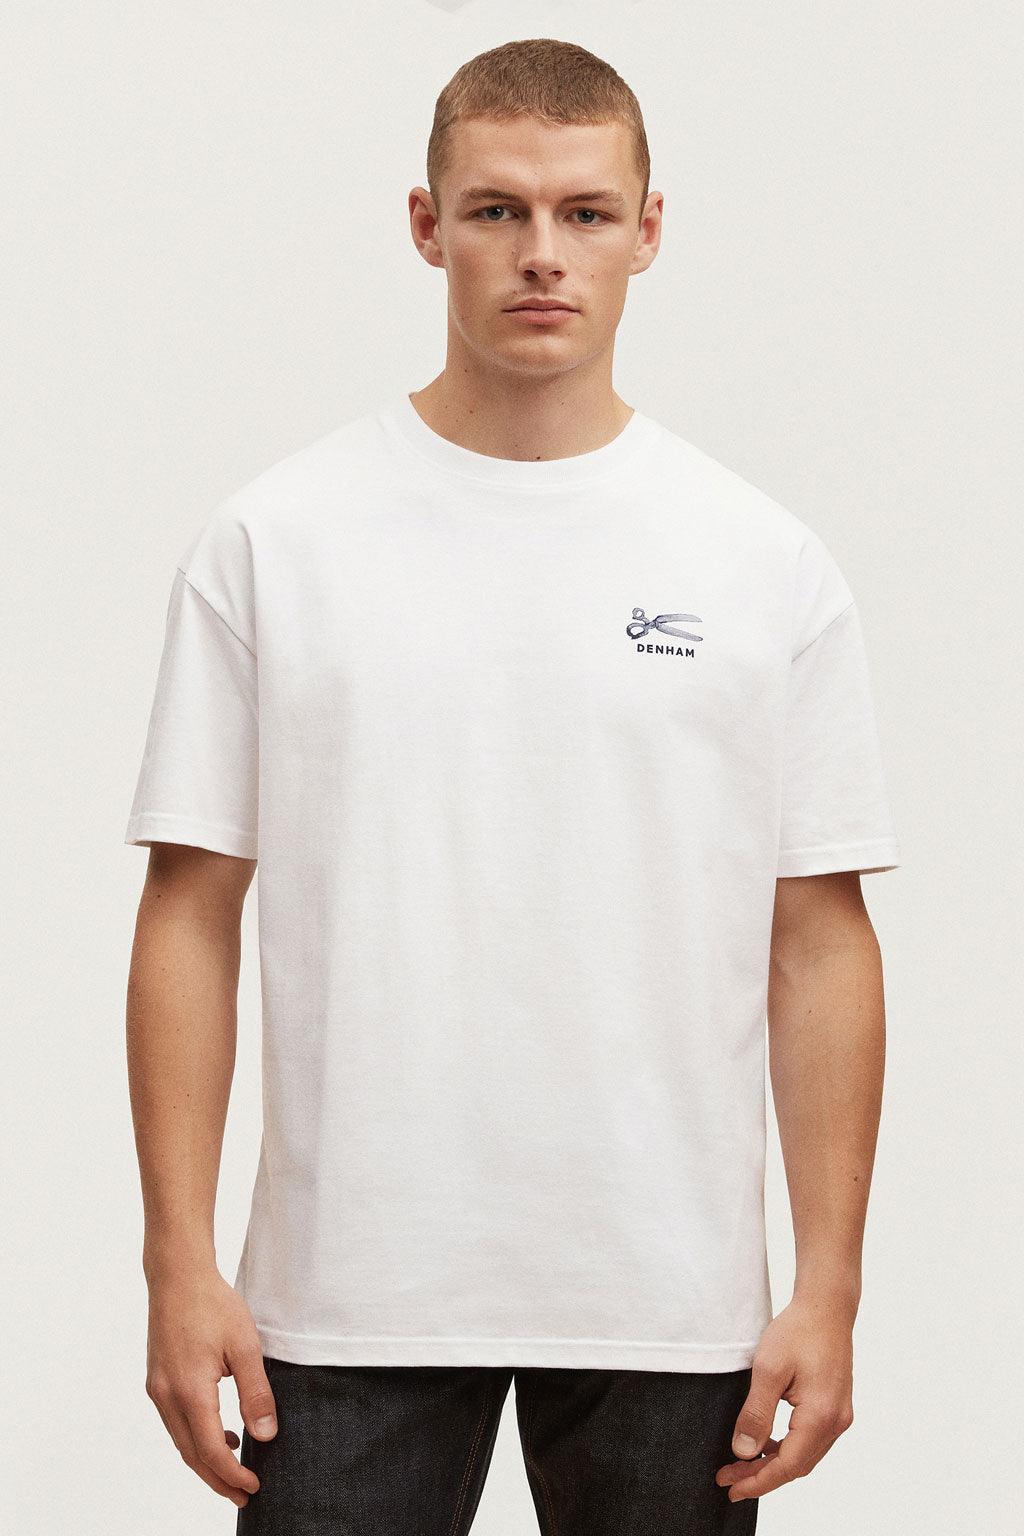 Denham t-shirt - Big Boss | the menswear concept